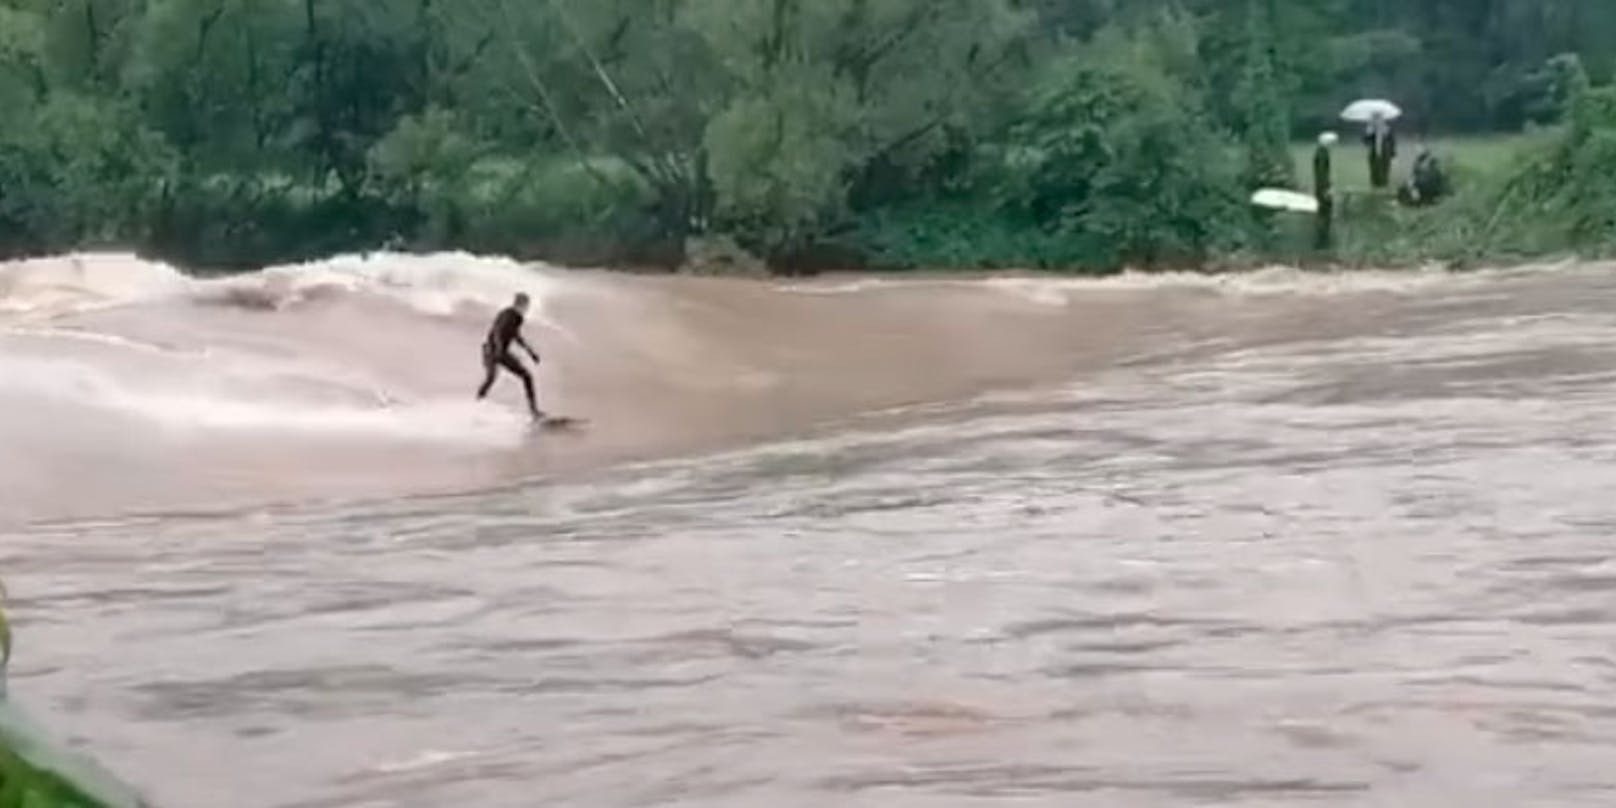 Ein Video zeigt die Surfer, die bei Hochwasser ihr Leben riskierten